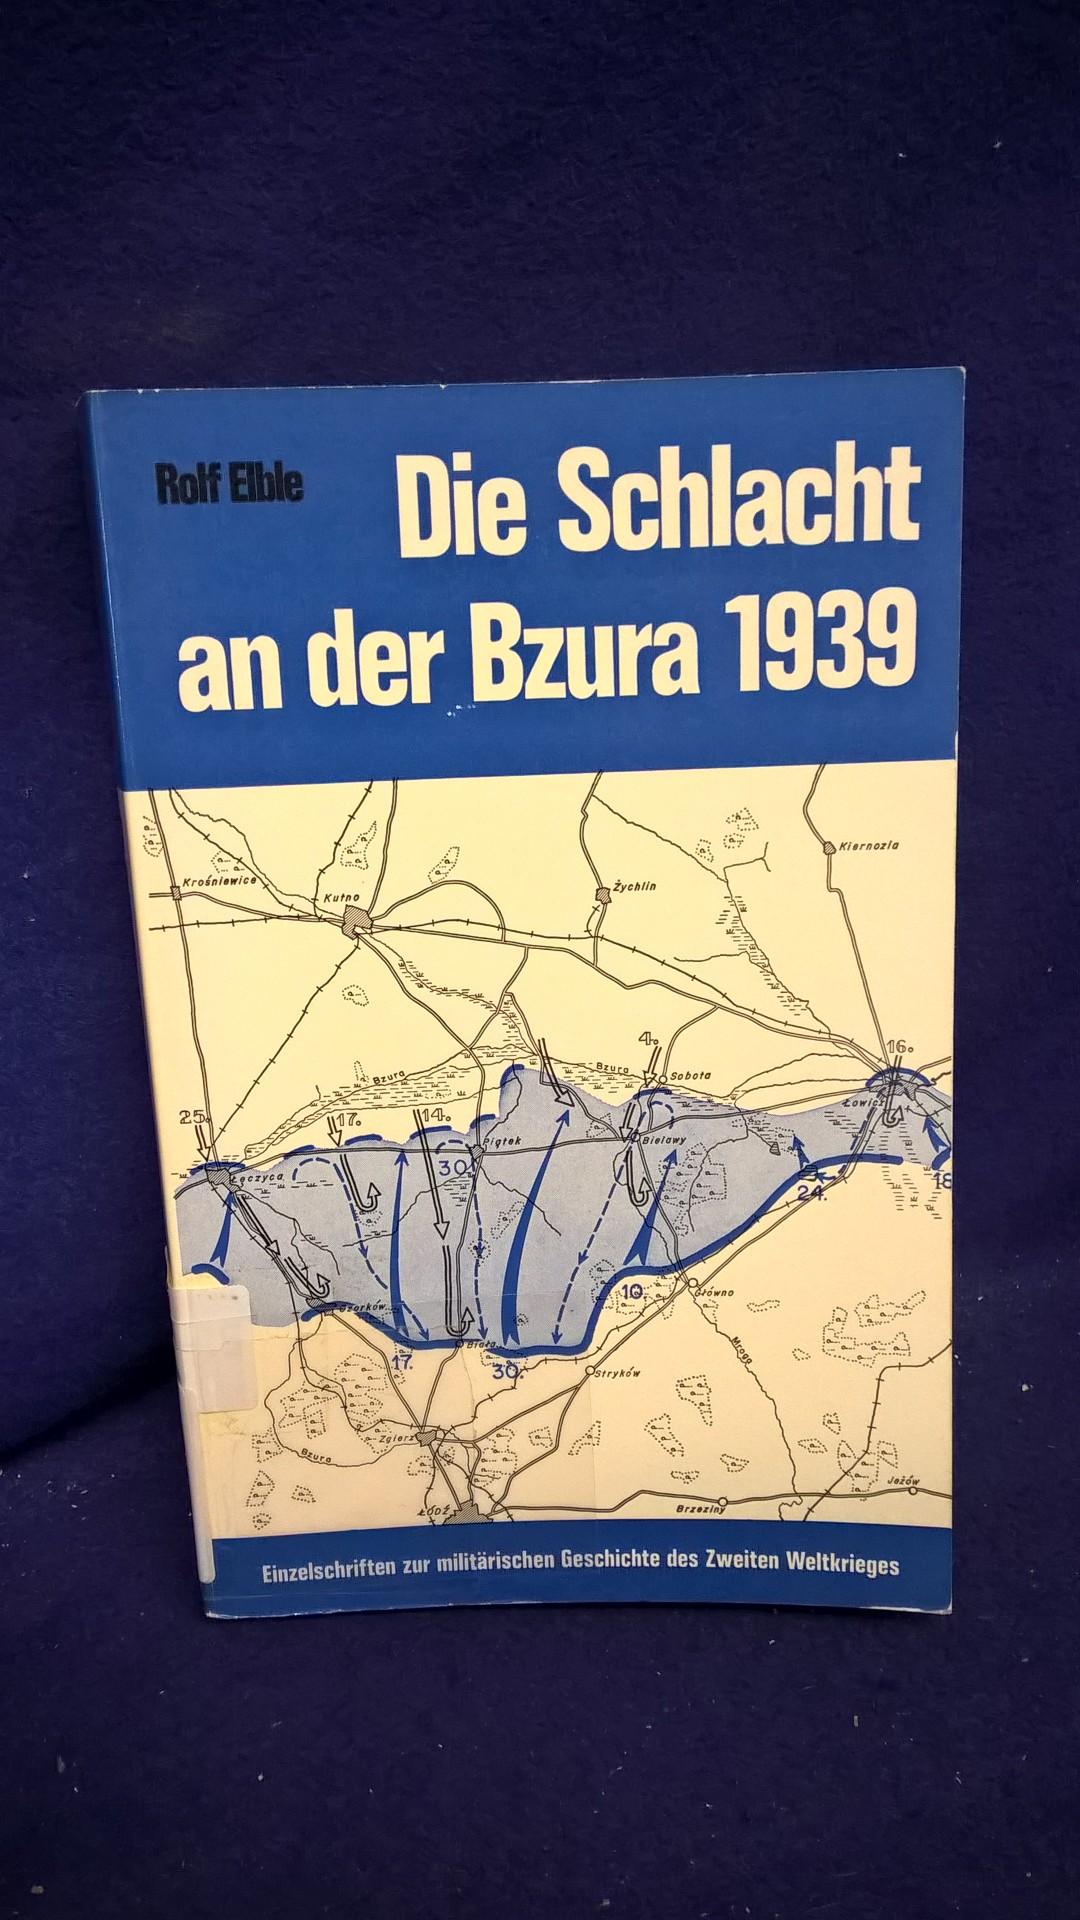 Einzelschriften zur militärischen Geschichte des 2.Weltkrieges - Band 15: Die Schlacht an der Bzura im September 1939 aus deutscher und polnischer Sicht.